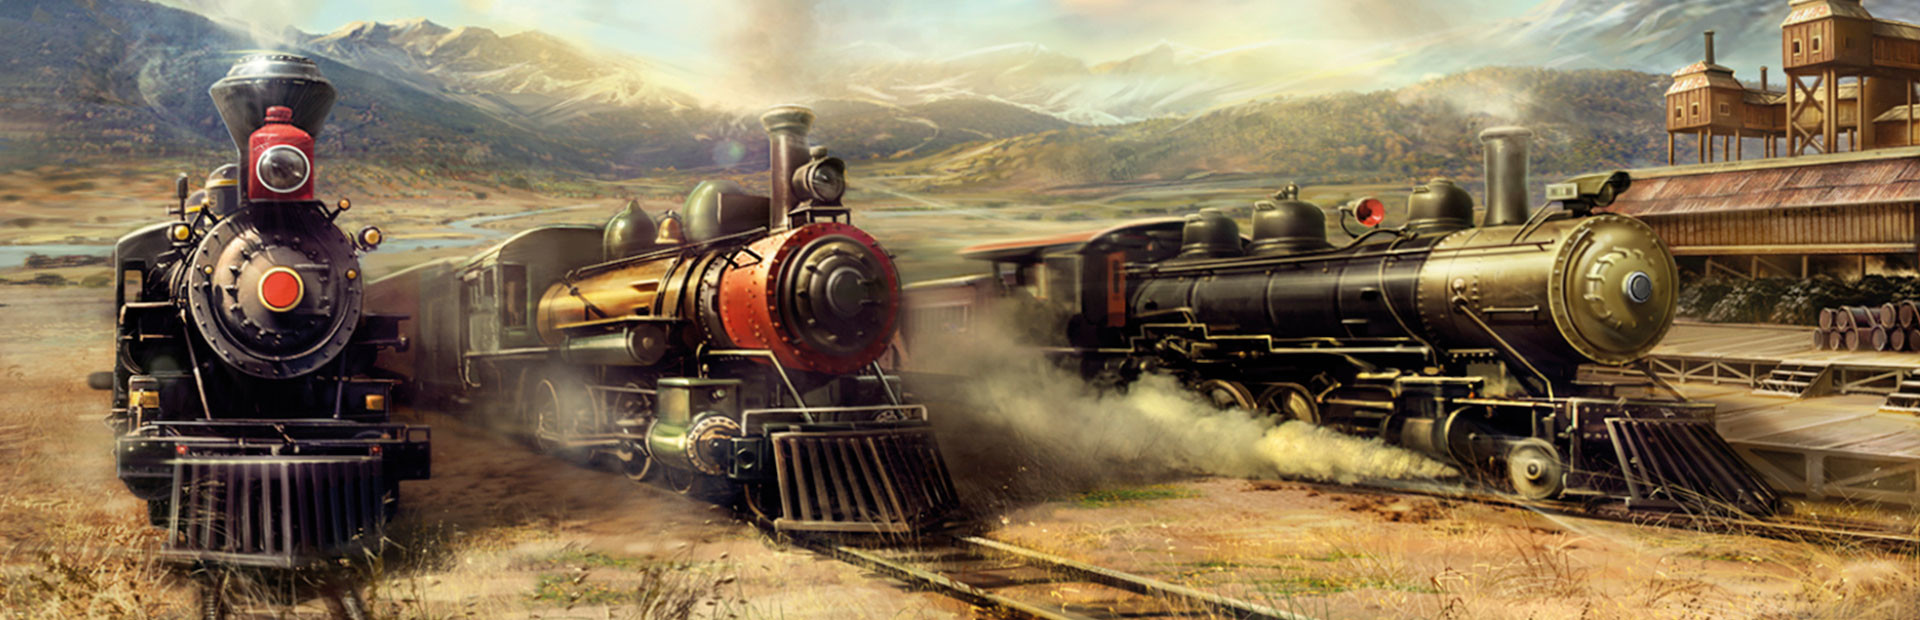 Railroad Corporation cover image